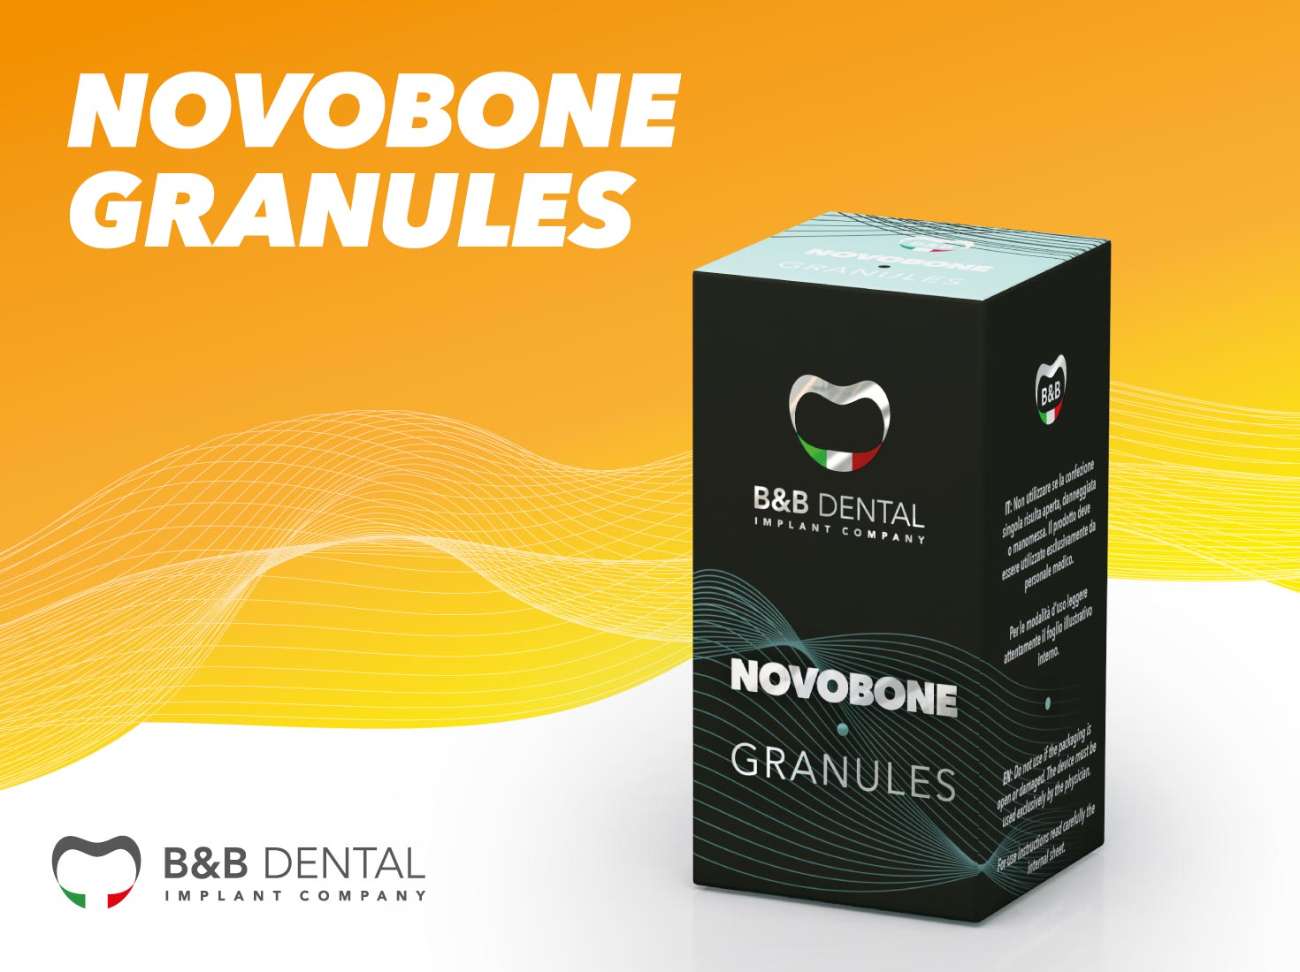 Novobone Granules